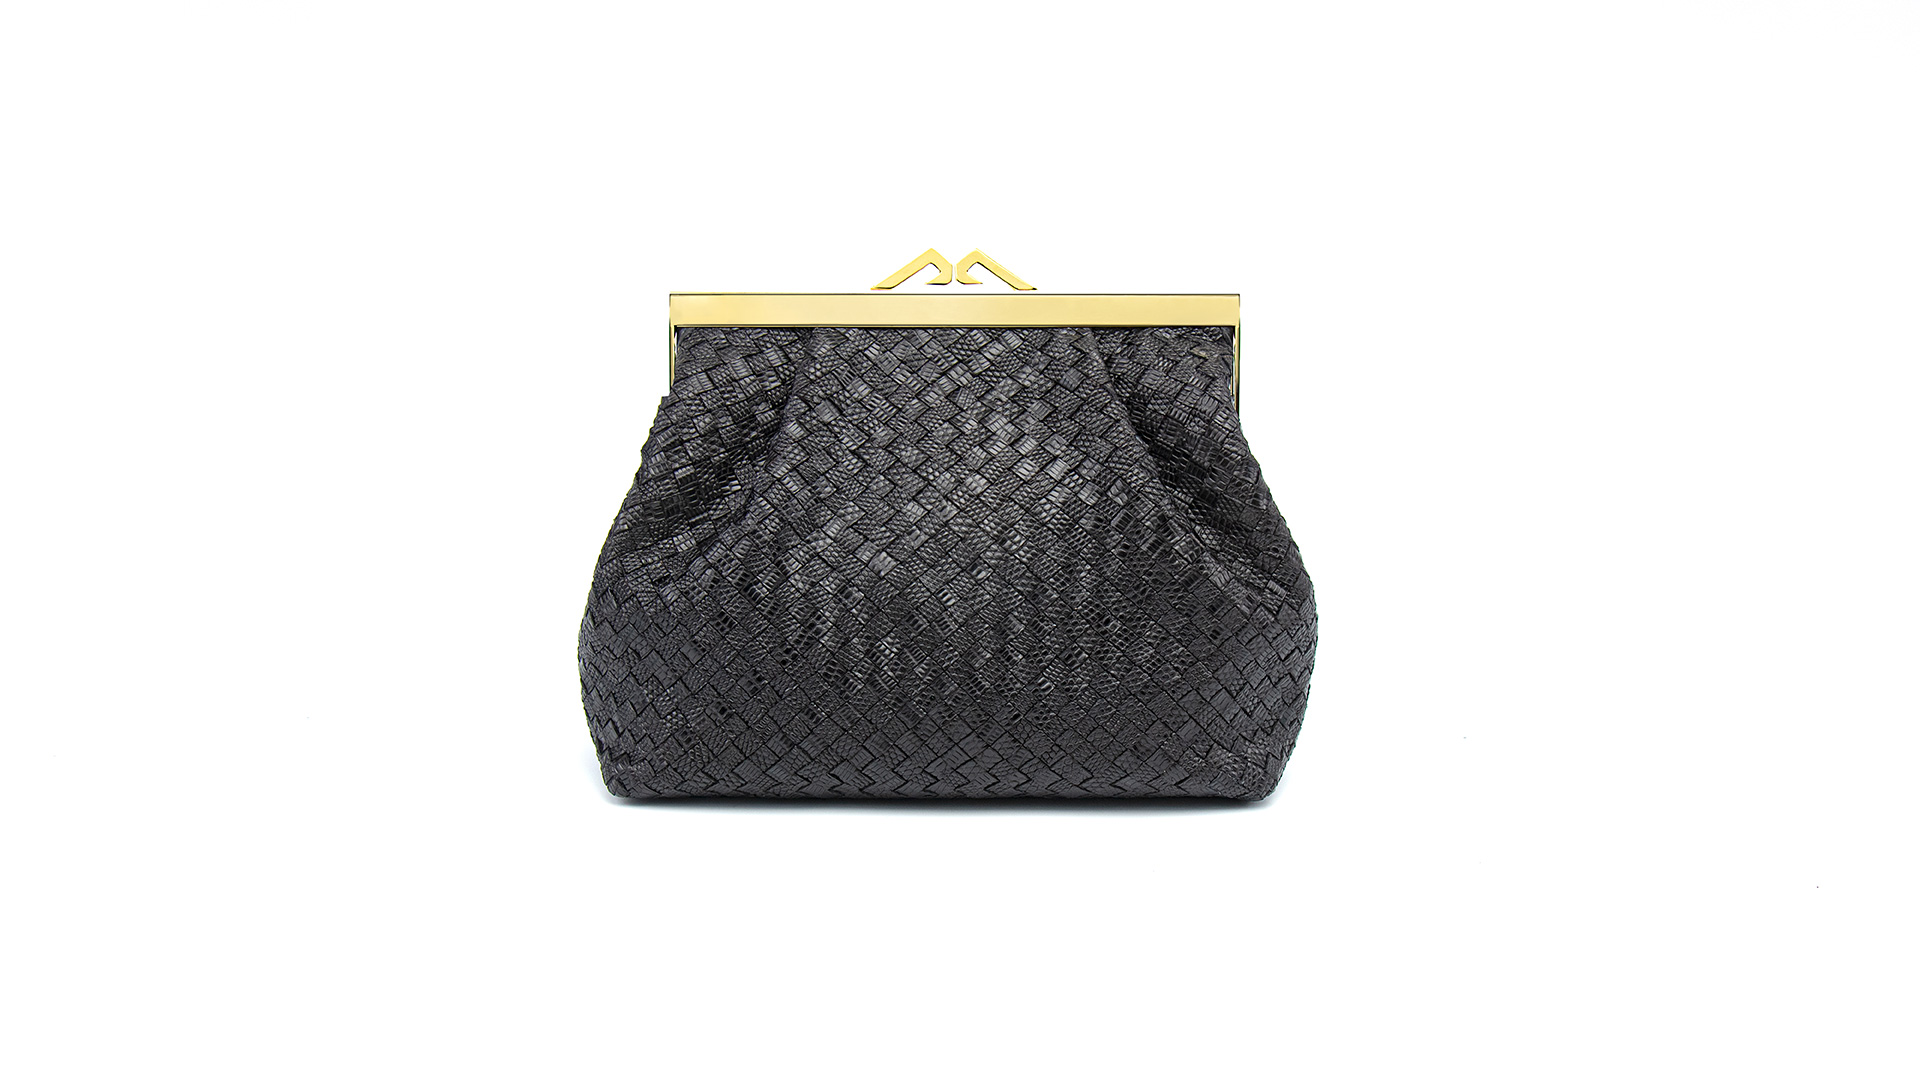 Black clutch bag, lizard handbag. NATALIA-Front-CRC2200021-043-BKI-1